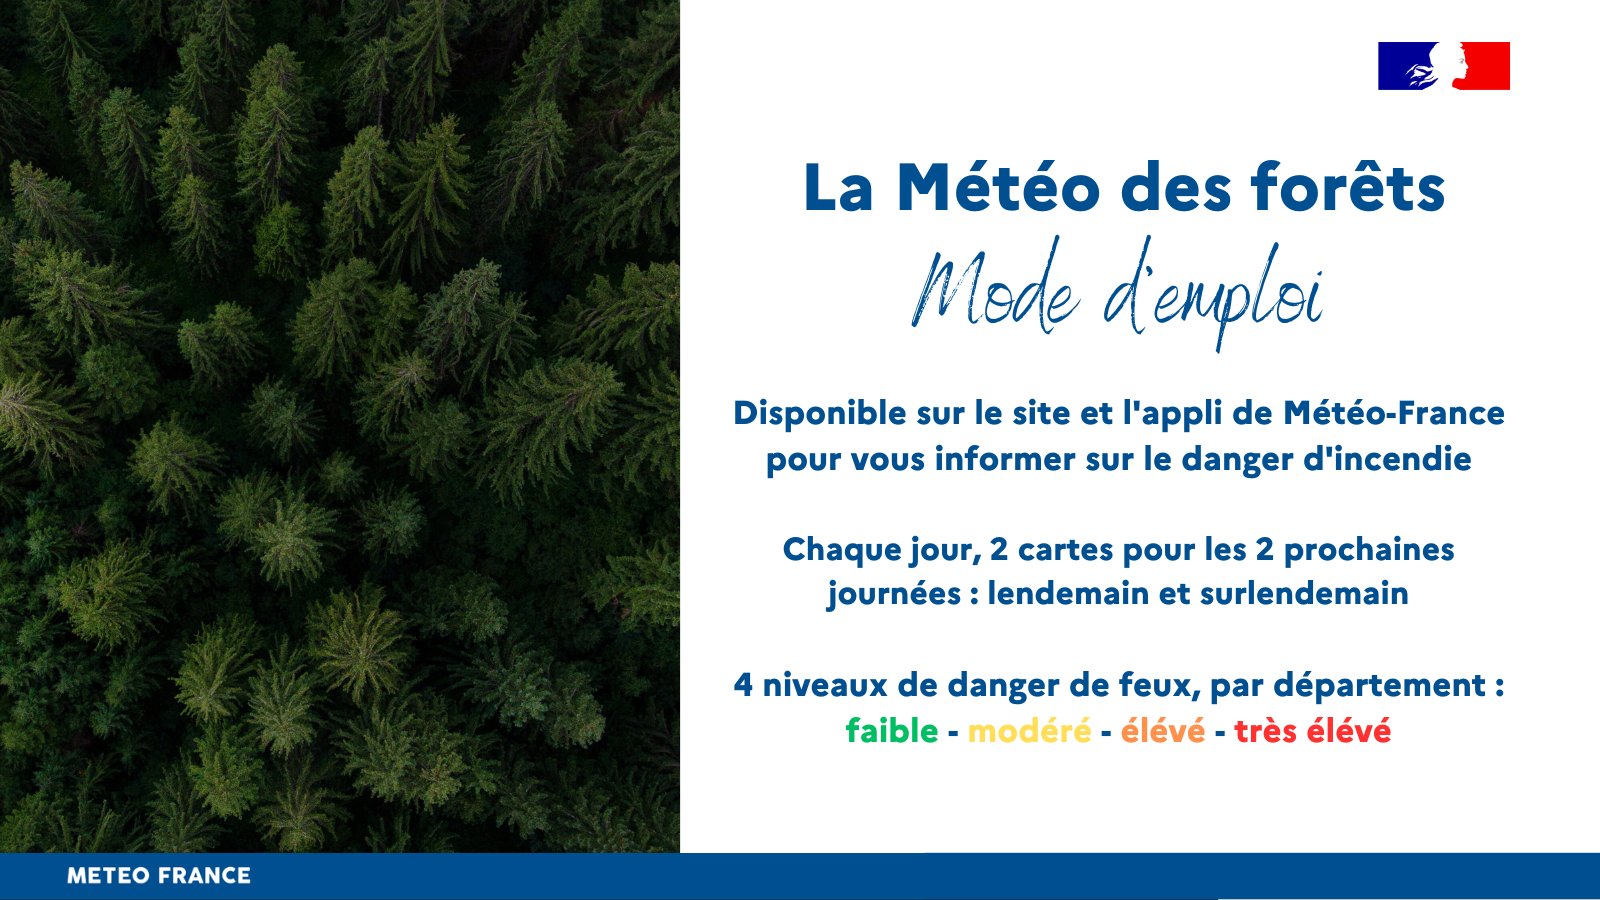 Mode d'emploi de la nouvelle Météo des forêts : un outil de prévention pour informer sur le danger de feu. Disponible chaque jour à 17h sur le site et l'application mobile de Météo-France, pour les deux prochaines journées.